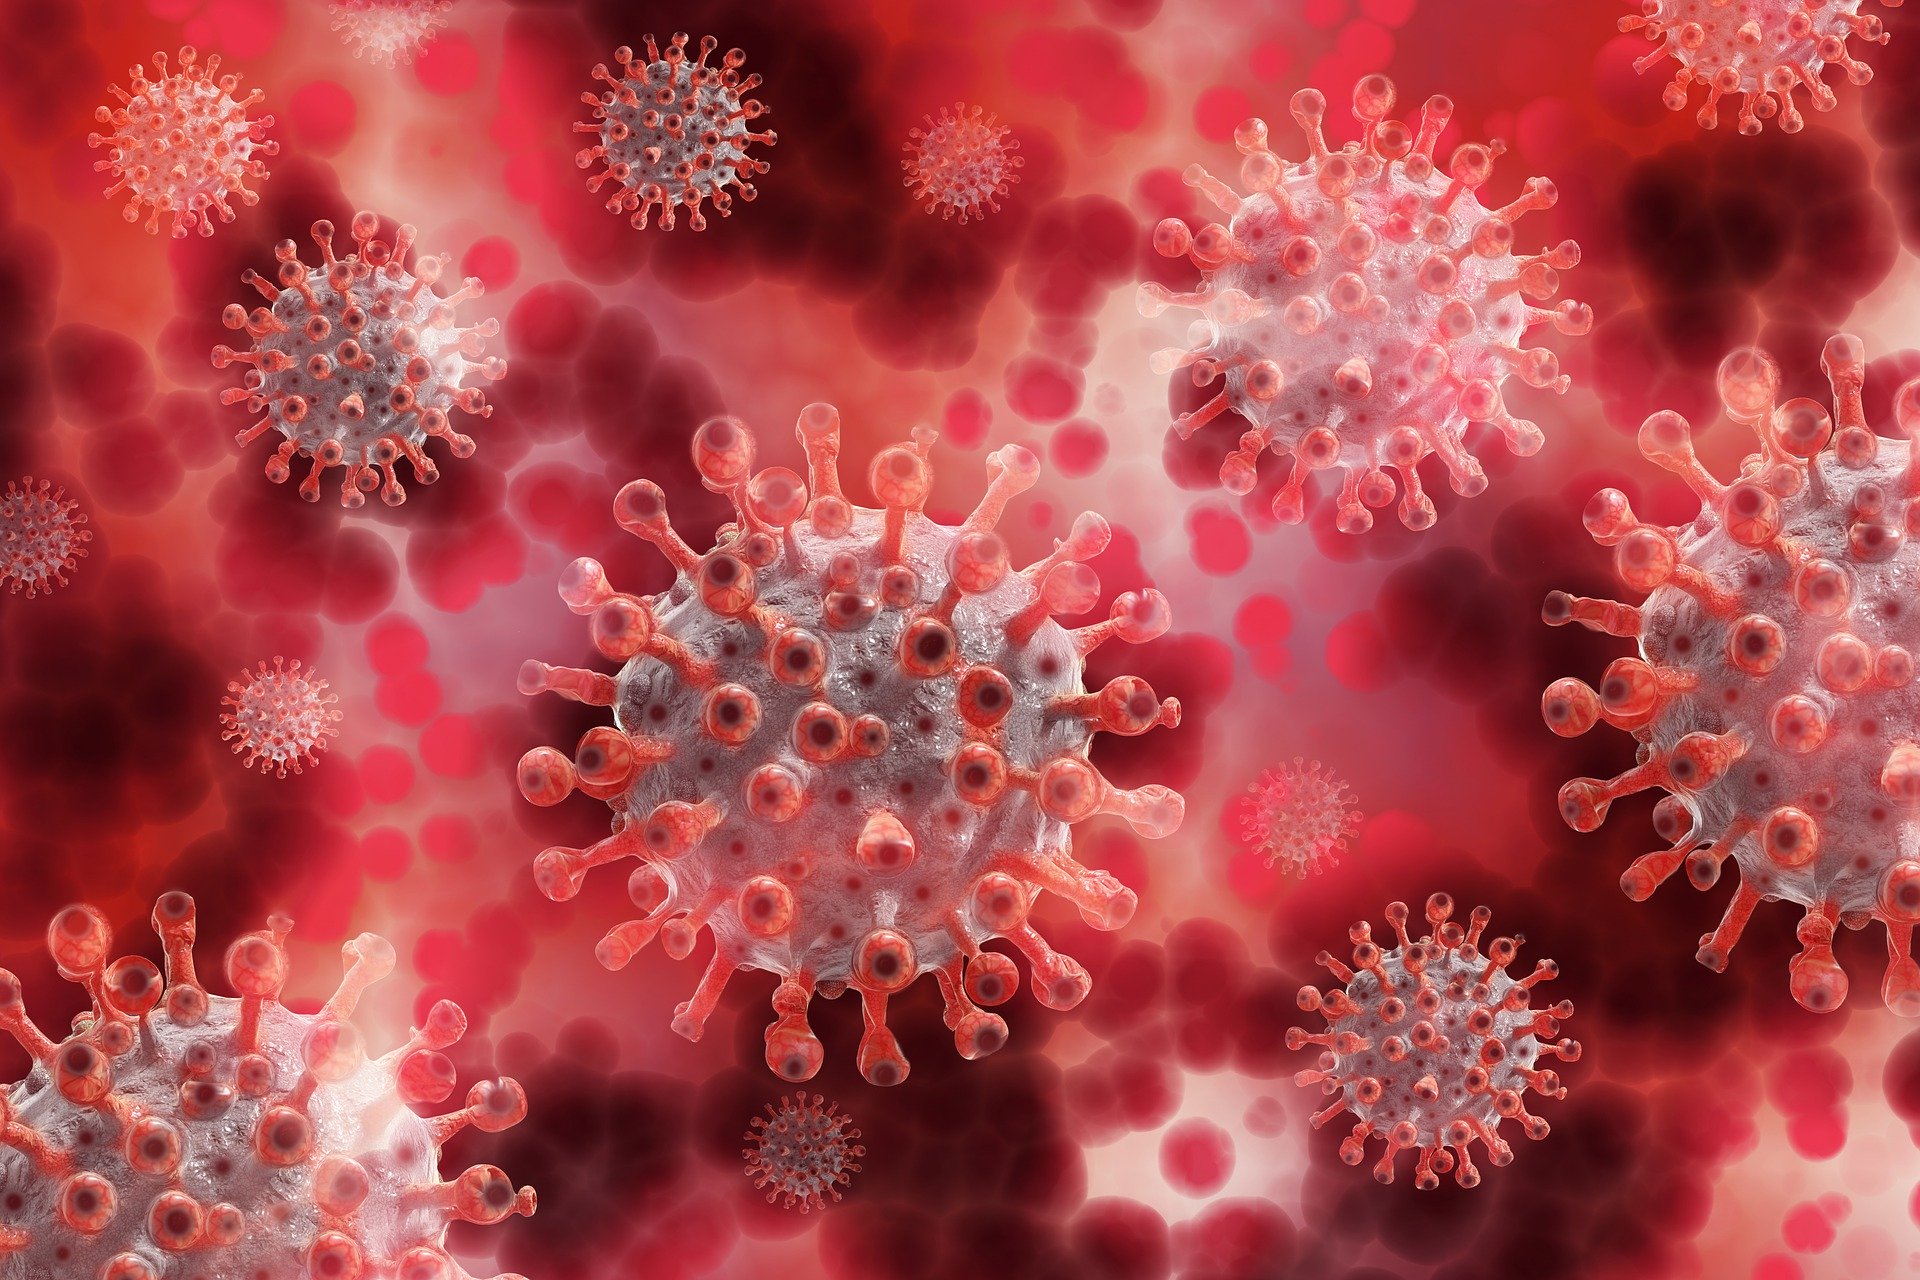  Gobierno de Nicaragua tiene como estrategia no establecer restricciones para detener la propagación del nuevo coronavirus. (Foto Prensa Libre: Pixabay)